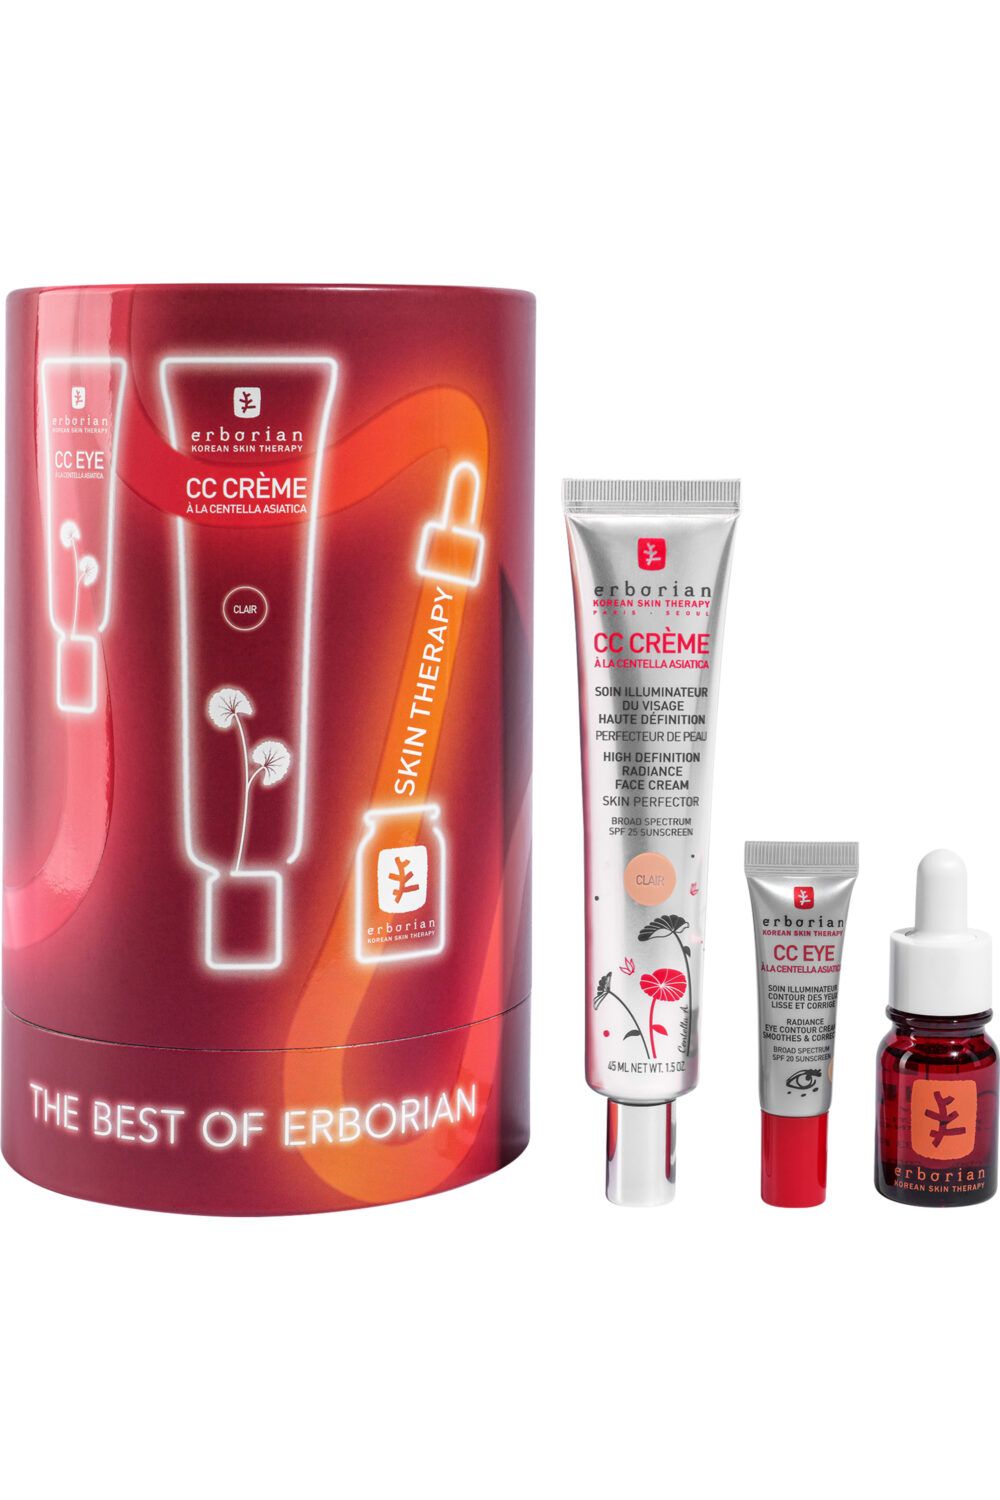 Erborian - Coffret CC crème Claire, CC eye & Skin Therapy